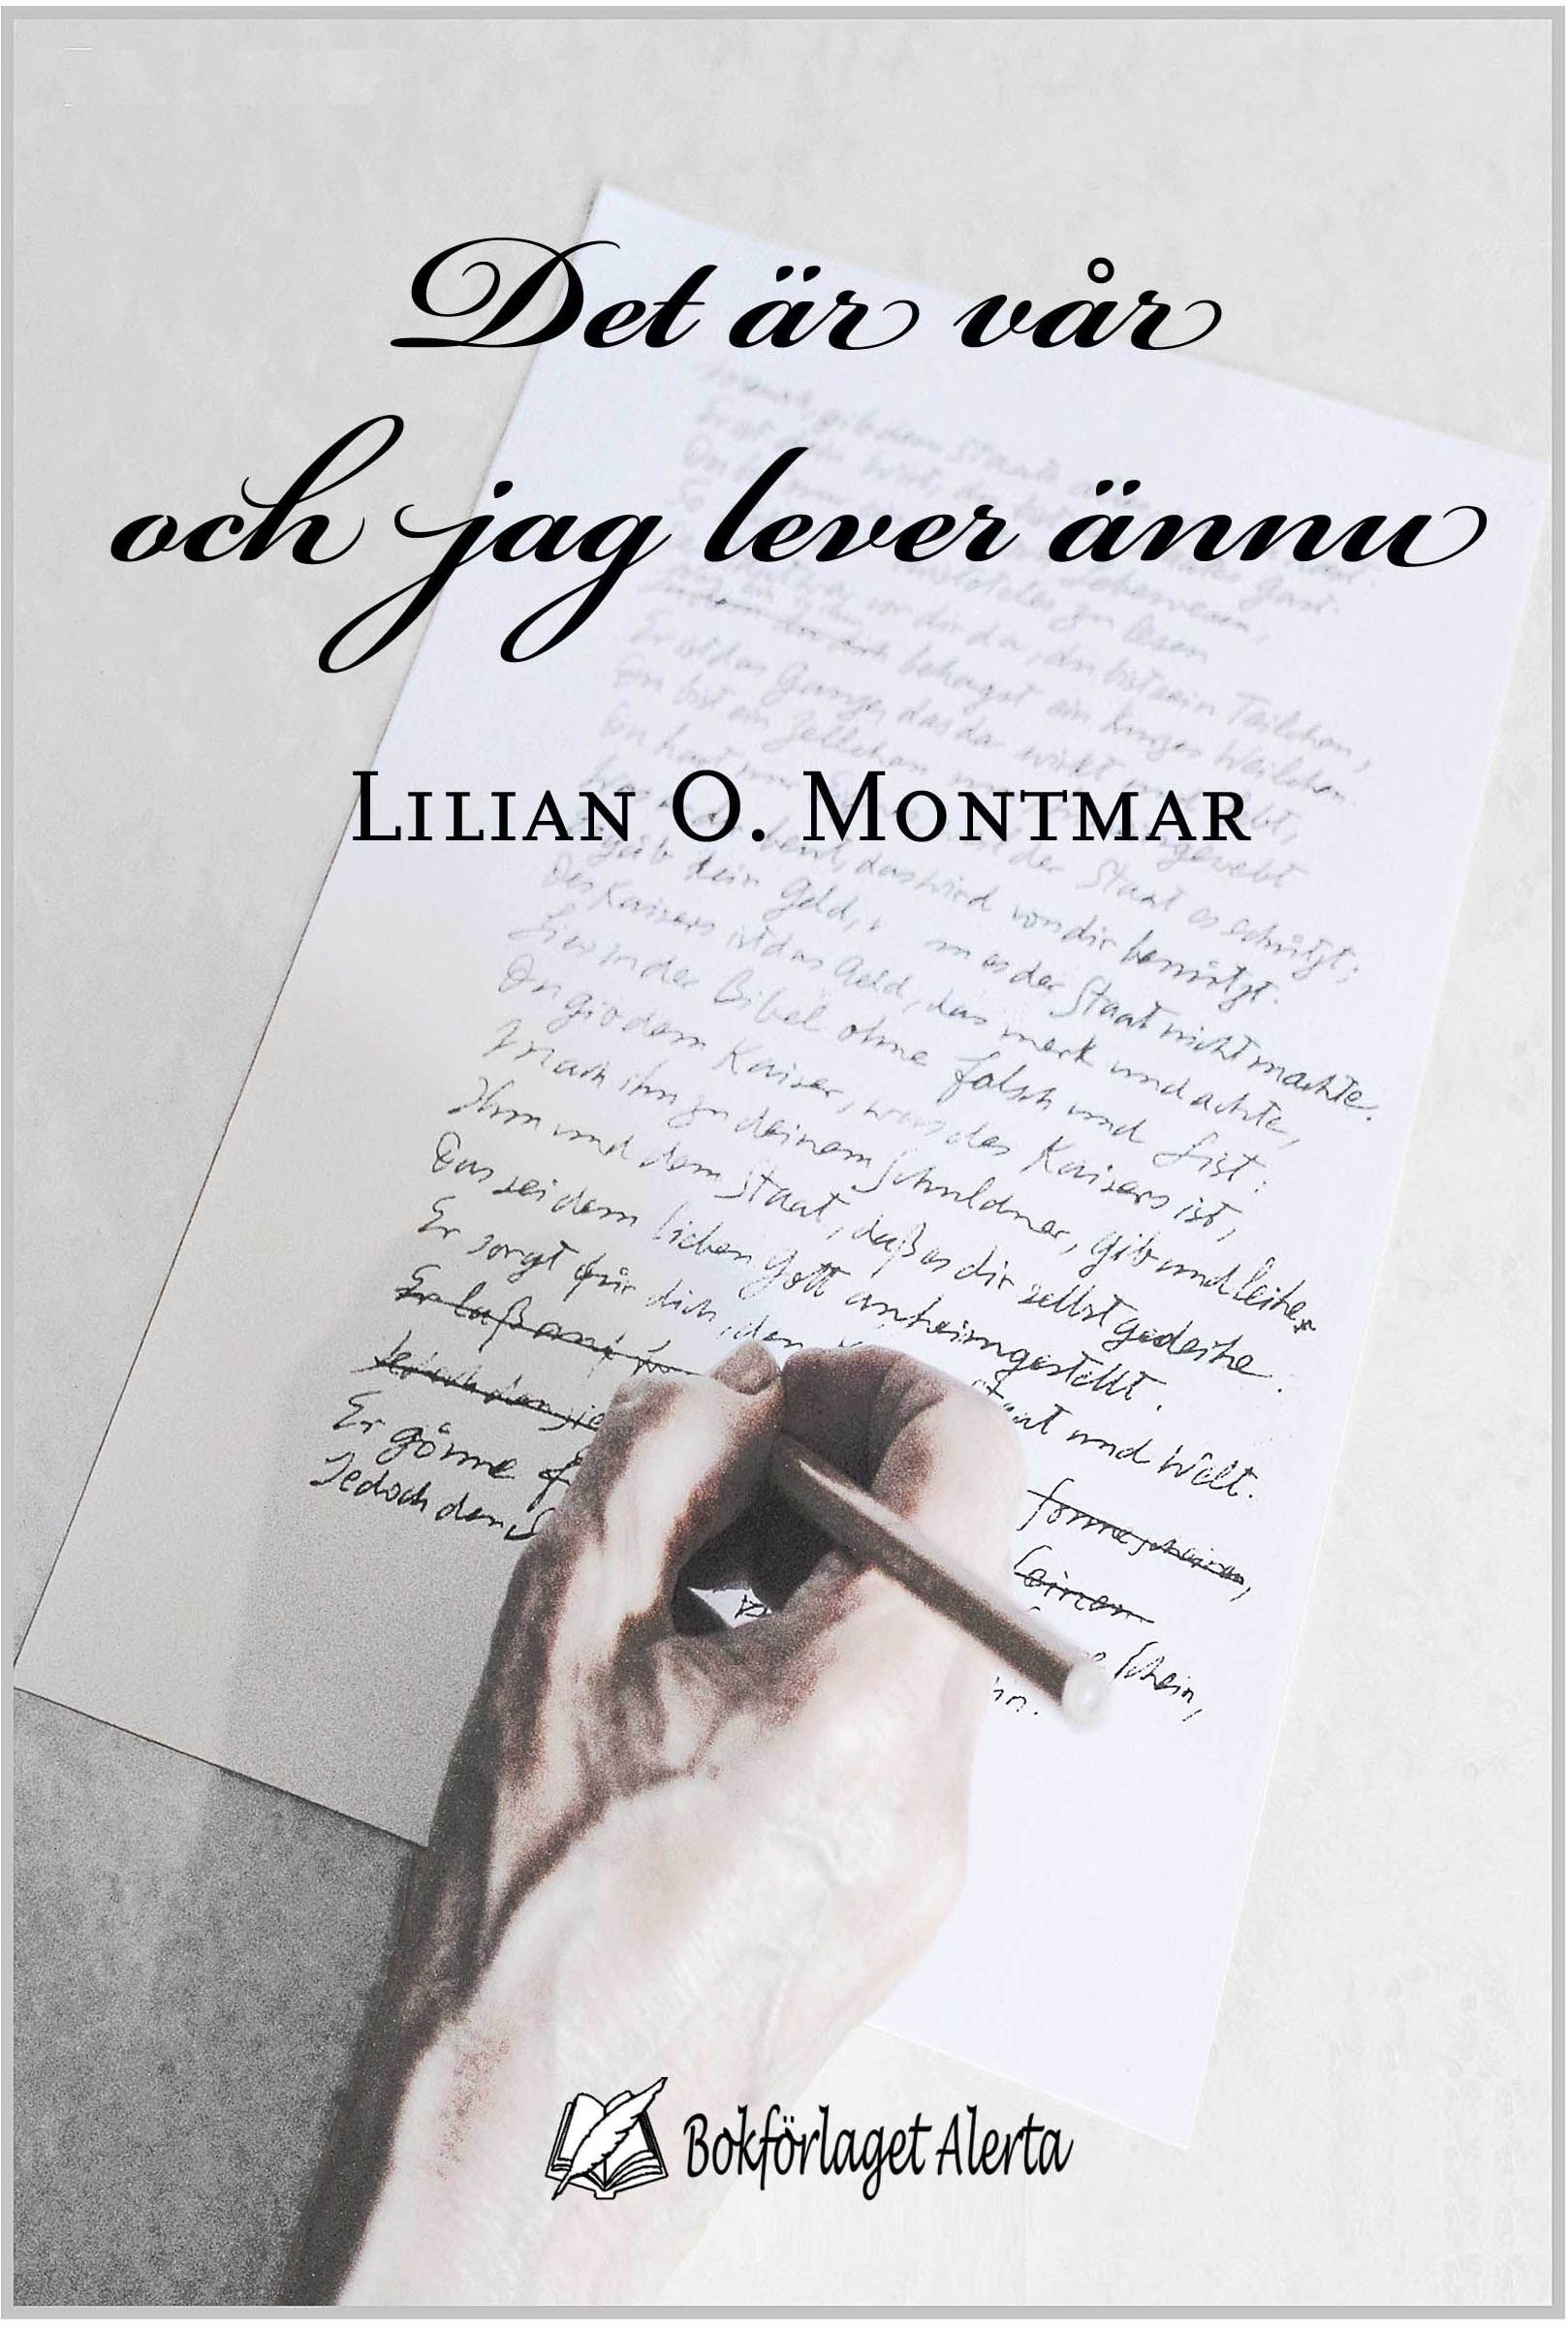 Det är vår och jag lever ännu, eBook by Lilian O. Montmar